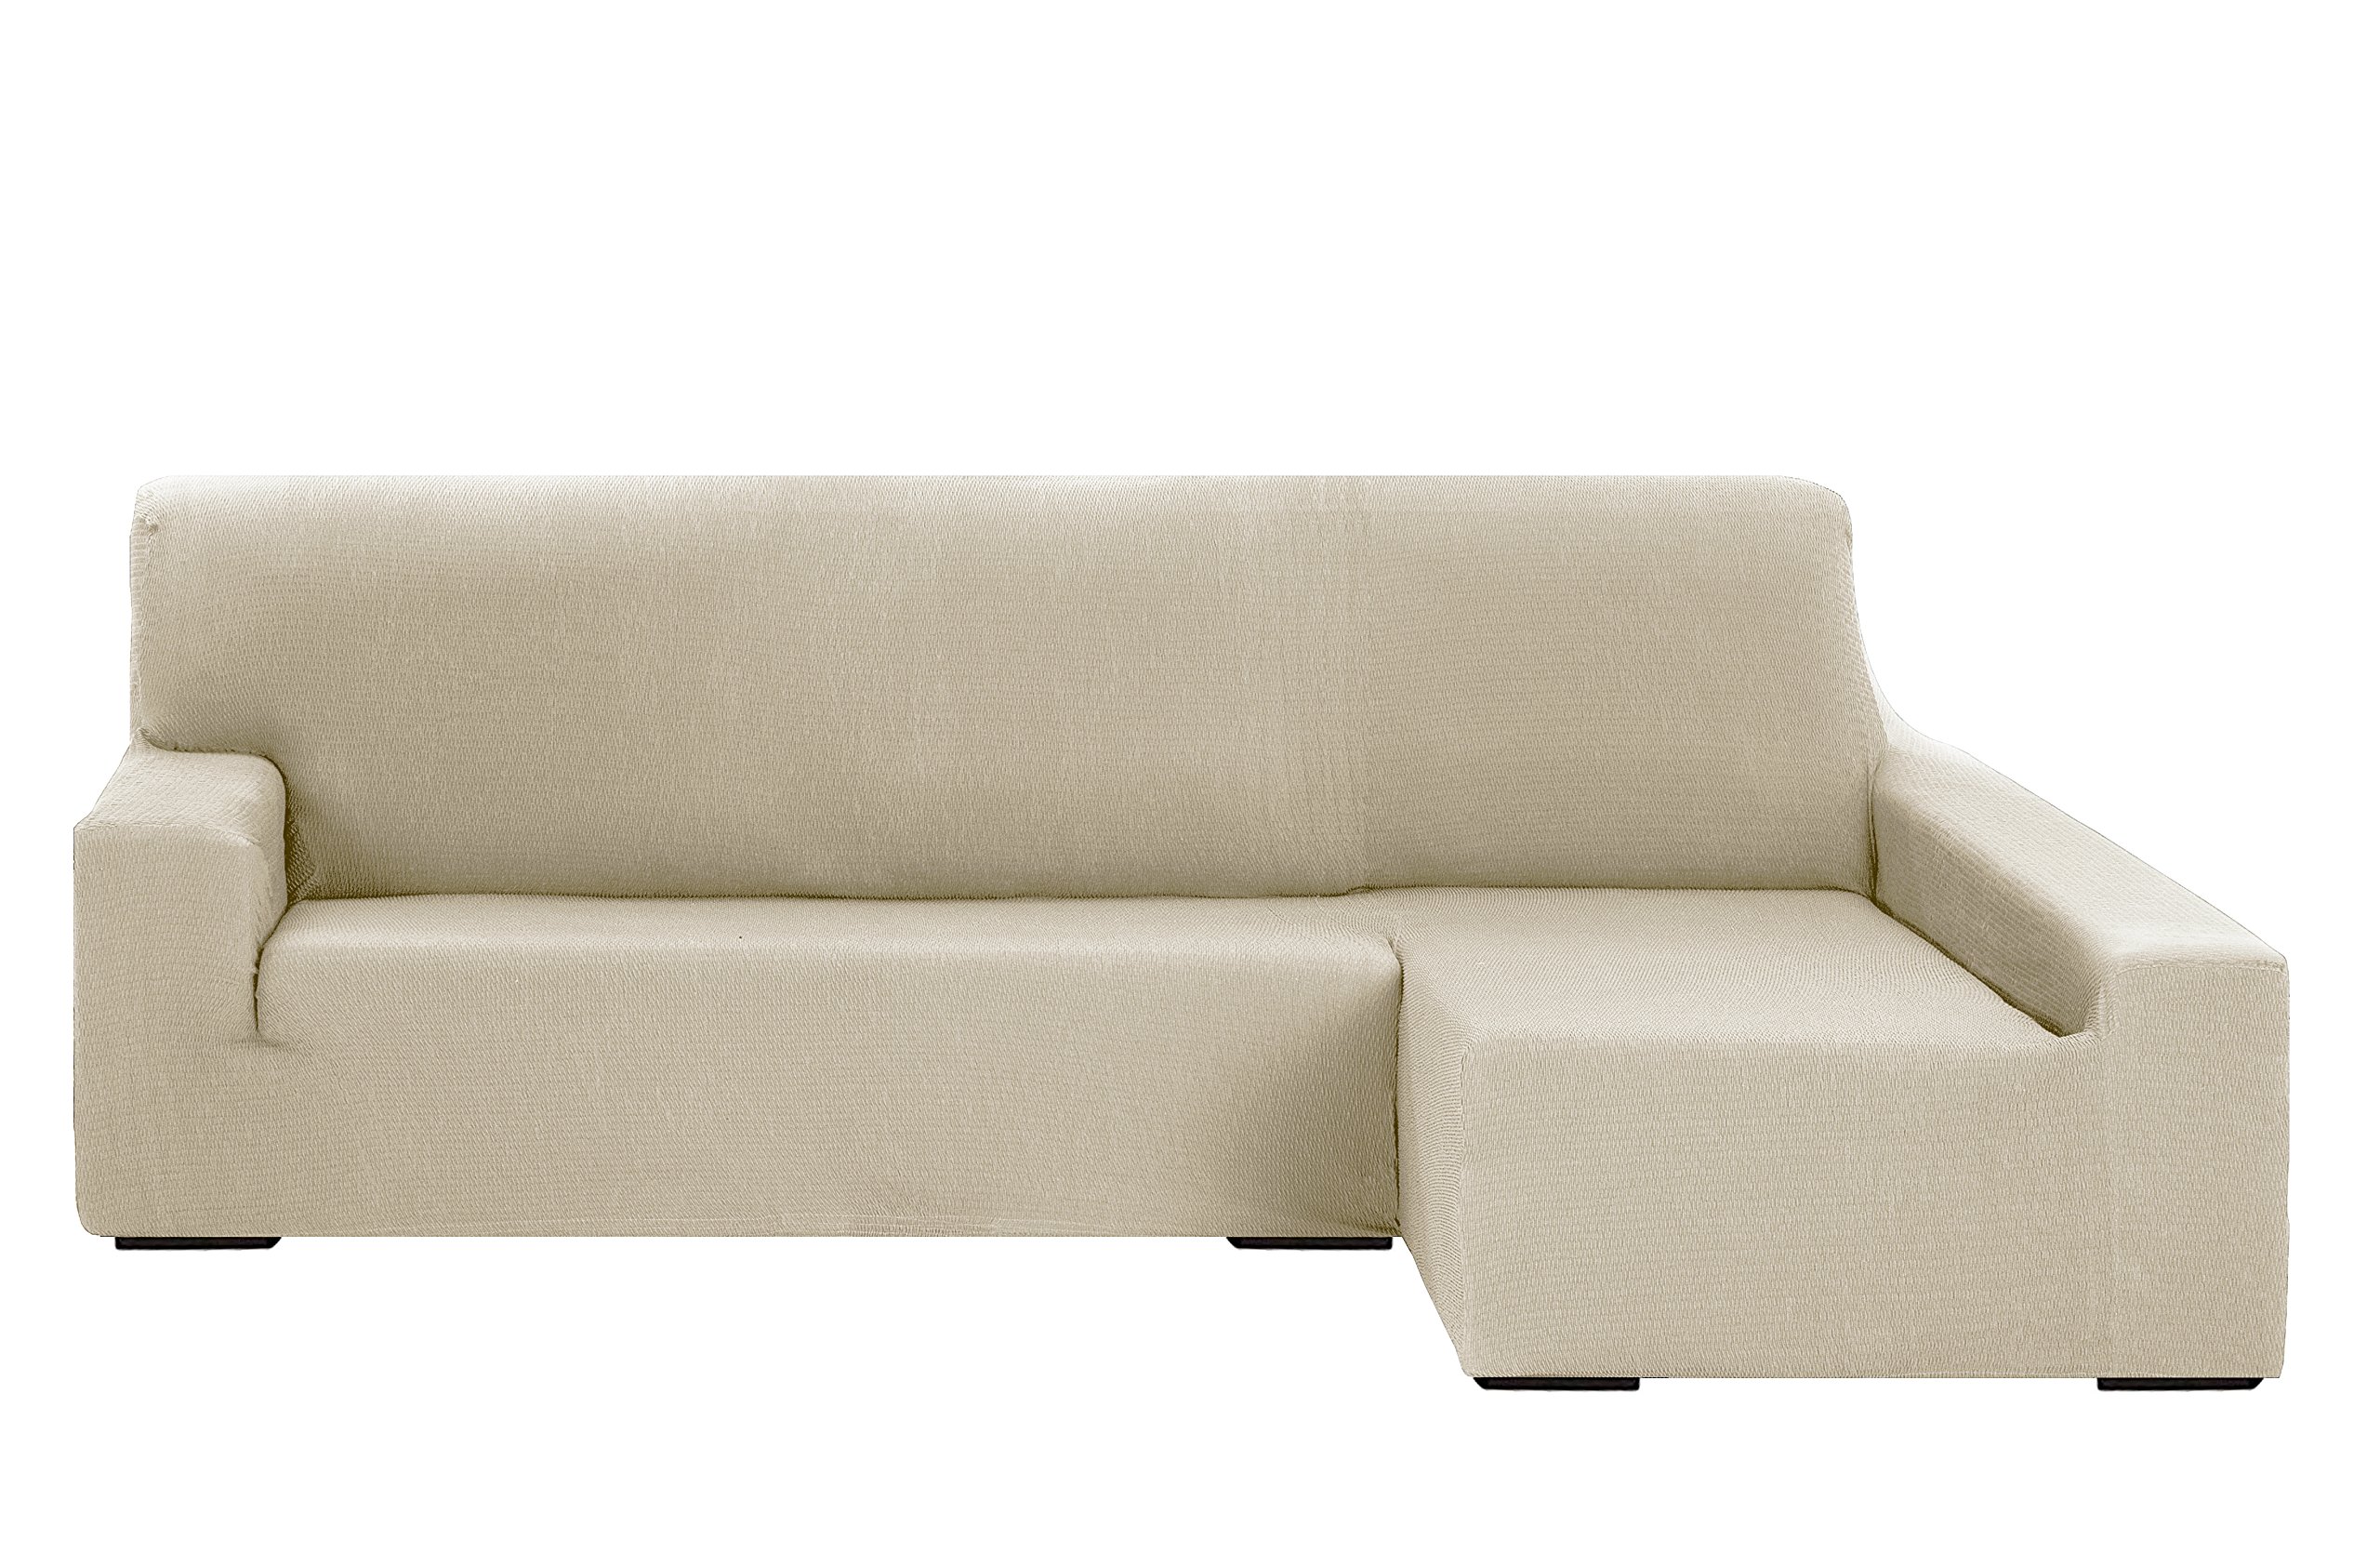 Martina Home - Elastischer Bezug für Sofa, Modell Túnez, Eckteil rechts, Stoff, Elfenbeinfarbe, 3-Sitzer, BRAZO DERECHO (visto de frente) 240 cm a 280 cm